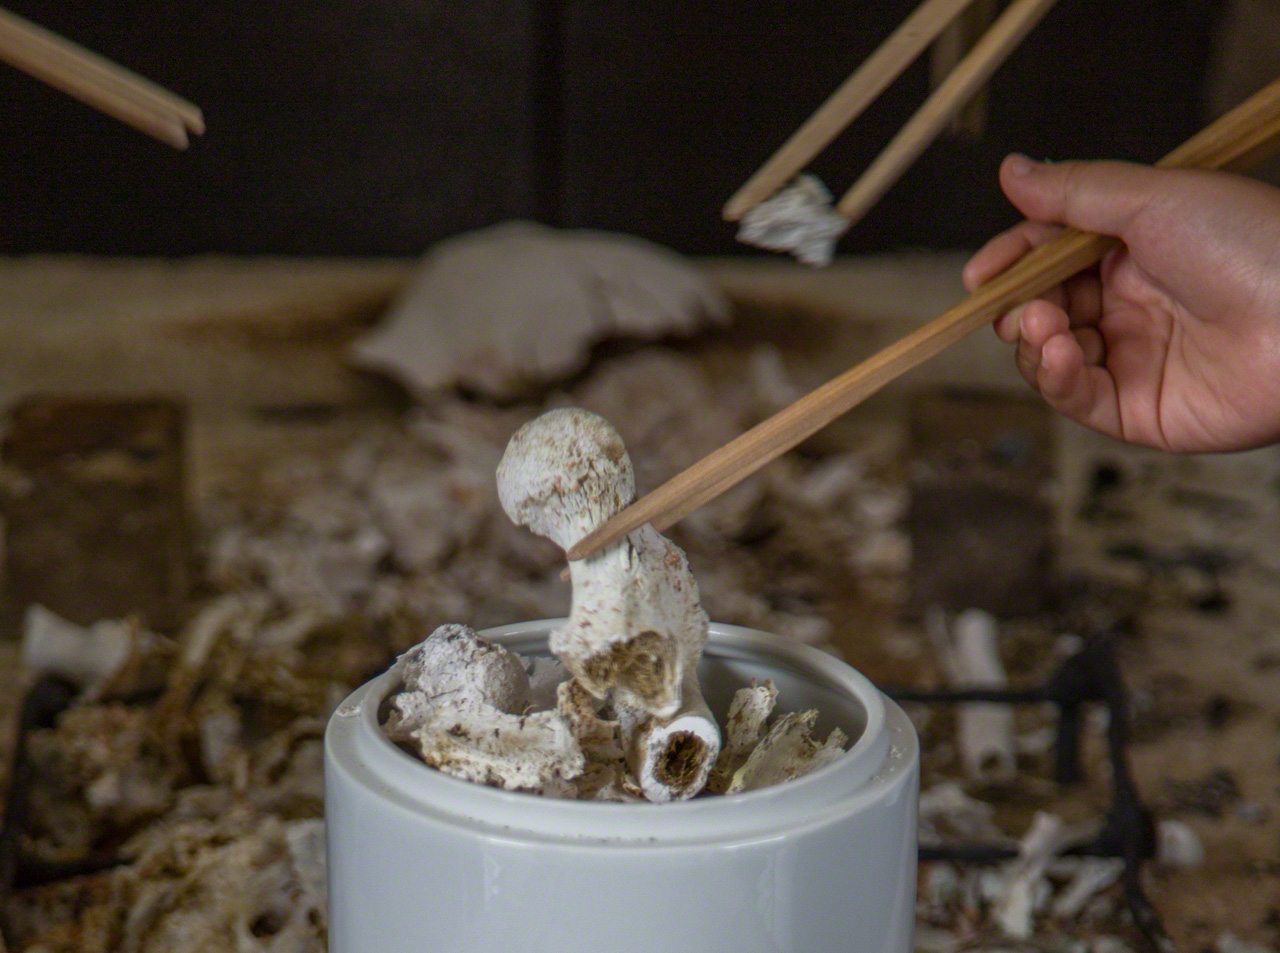  نقل العظام إلى جرة بعد حرق الجثة في إحدى الجنازات البوذية في اليابان. حيث يصبح الجسد المادي في هذا العالم هو المعدن الحيوي للعظام مع عبور الروح إلى العالم الآخر. ( © أونيشي ناروأكي)